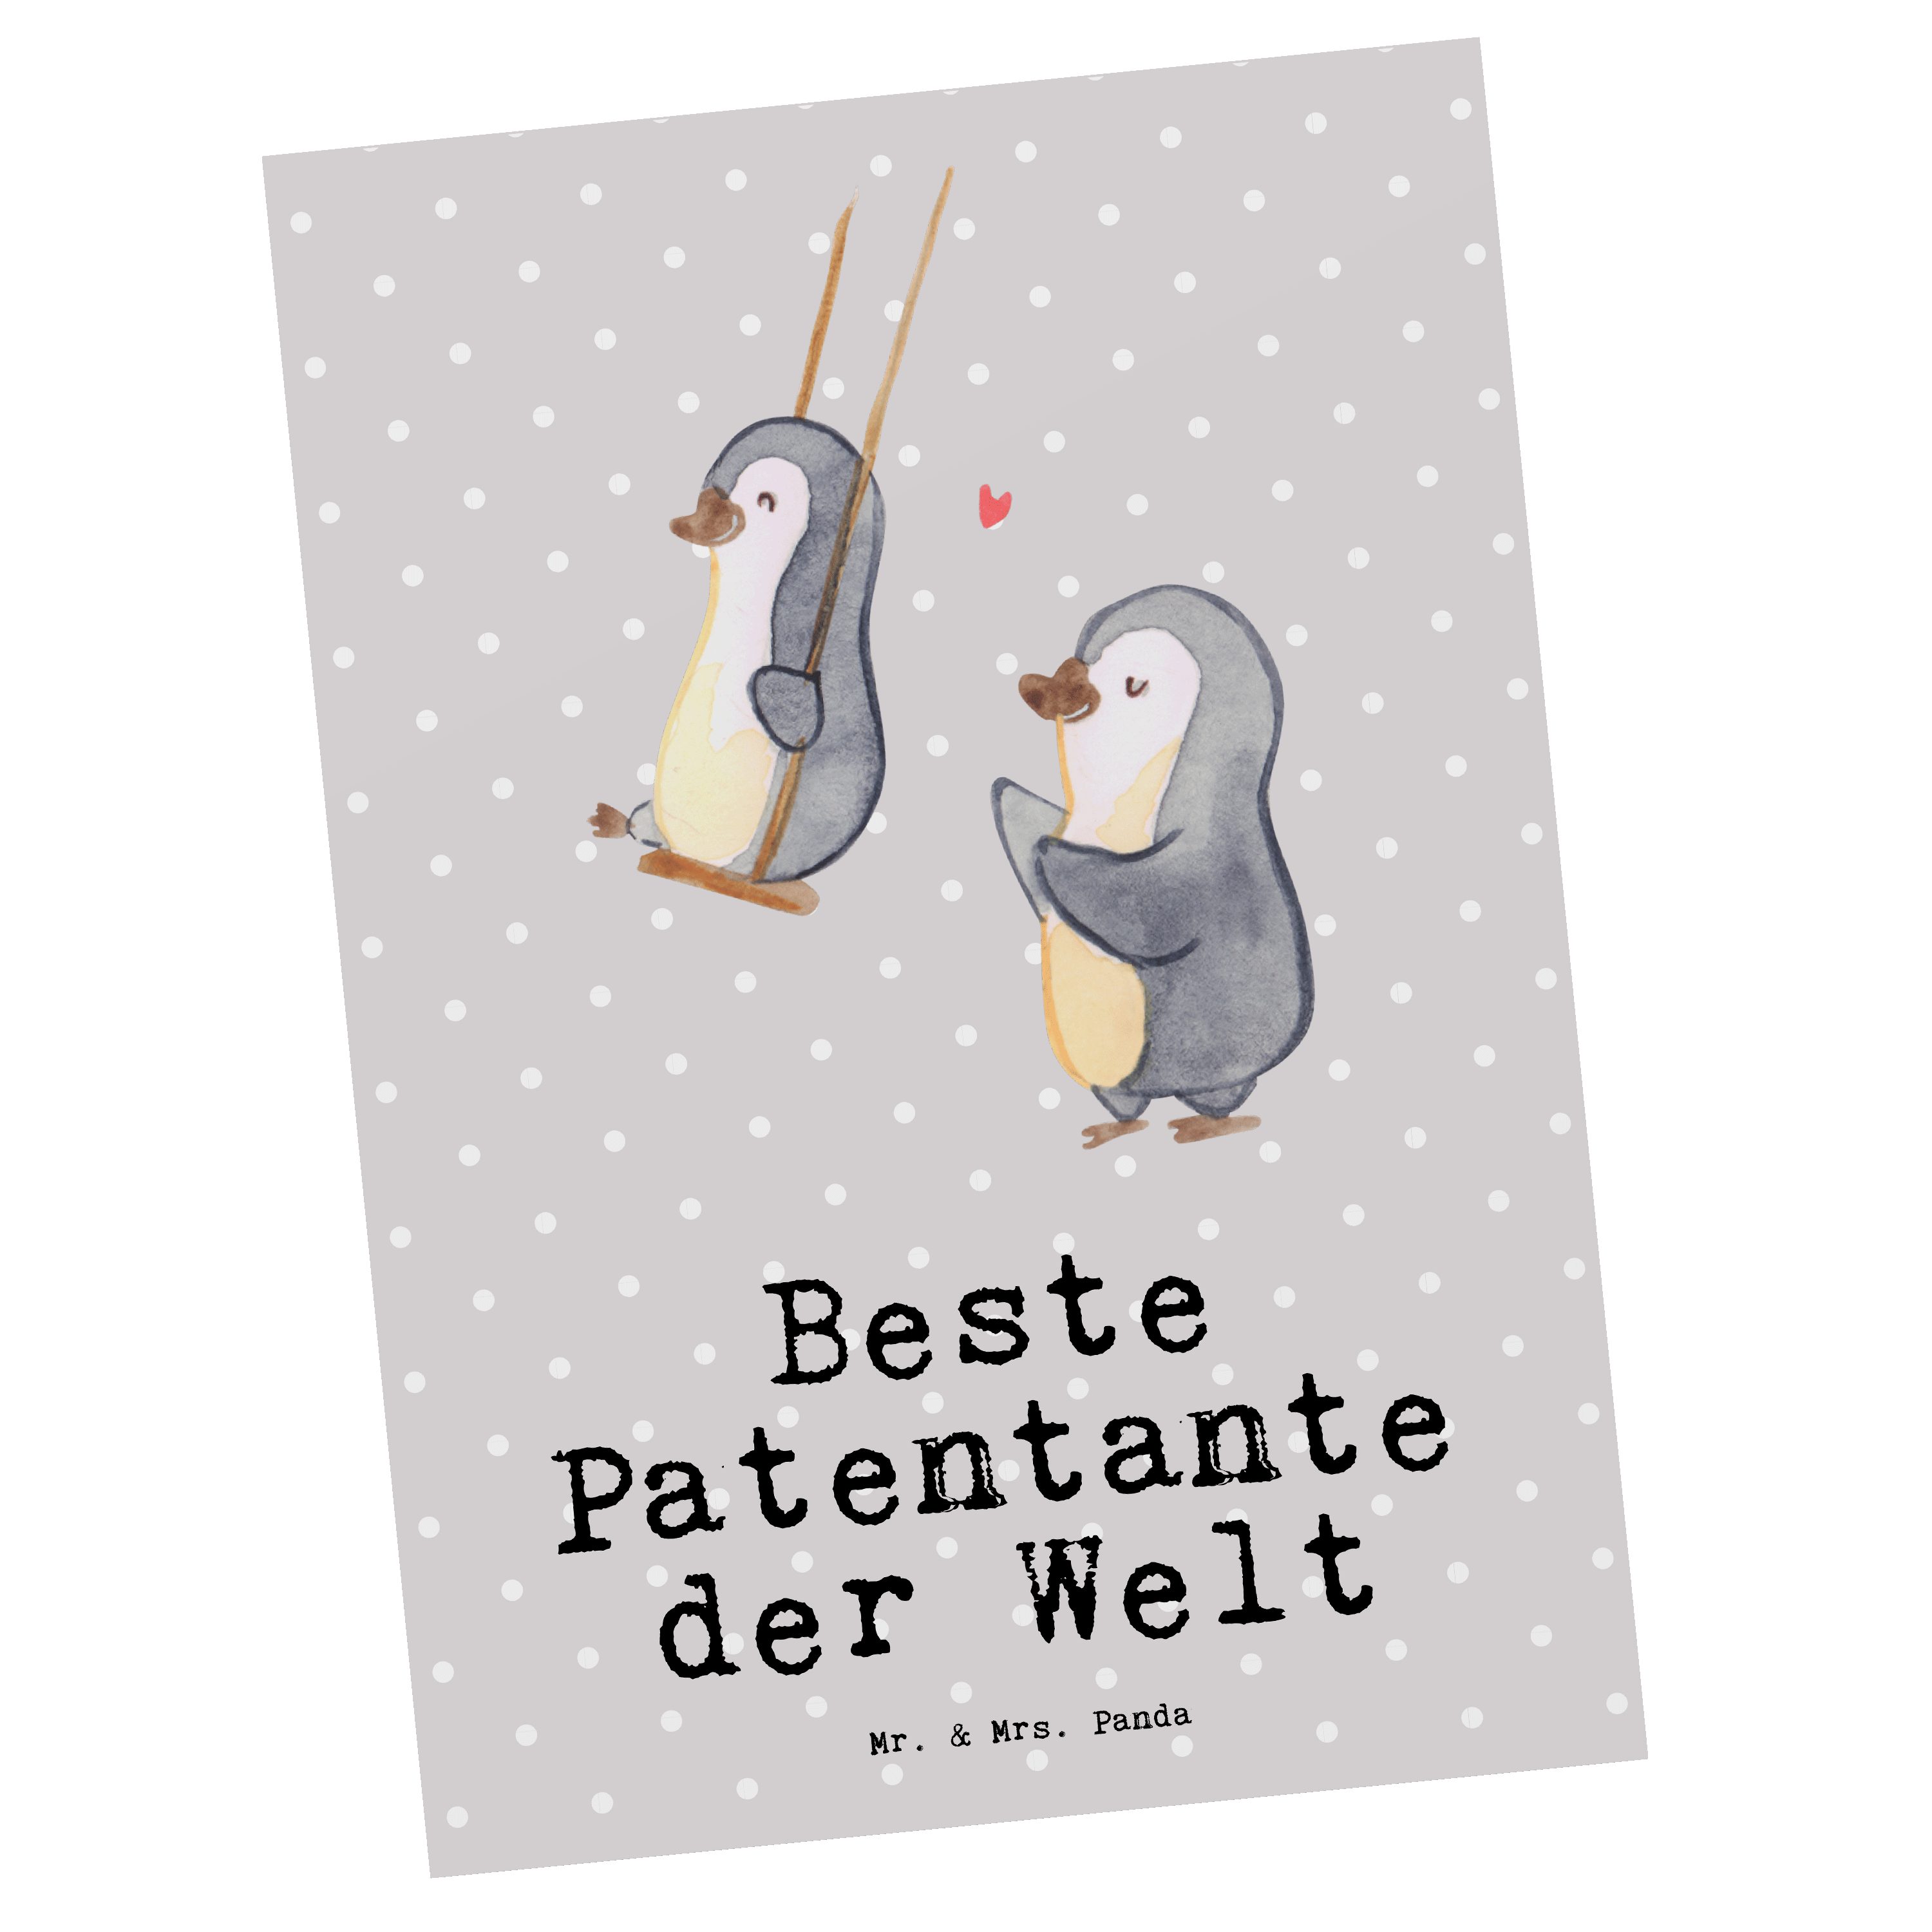 Patentante Grau Pastell Mr. & der Panda Mrs. - Beste - Geschenk Welt Pinguin Postkarte Geschenk,